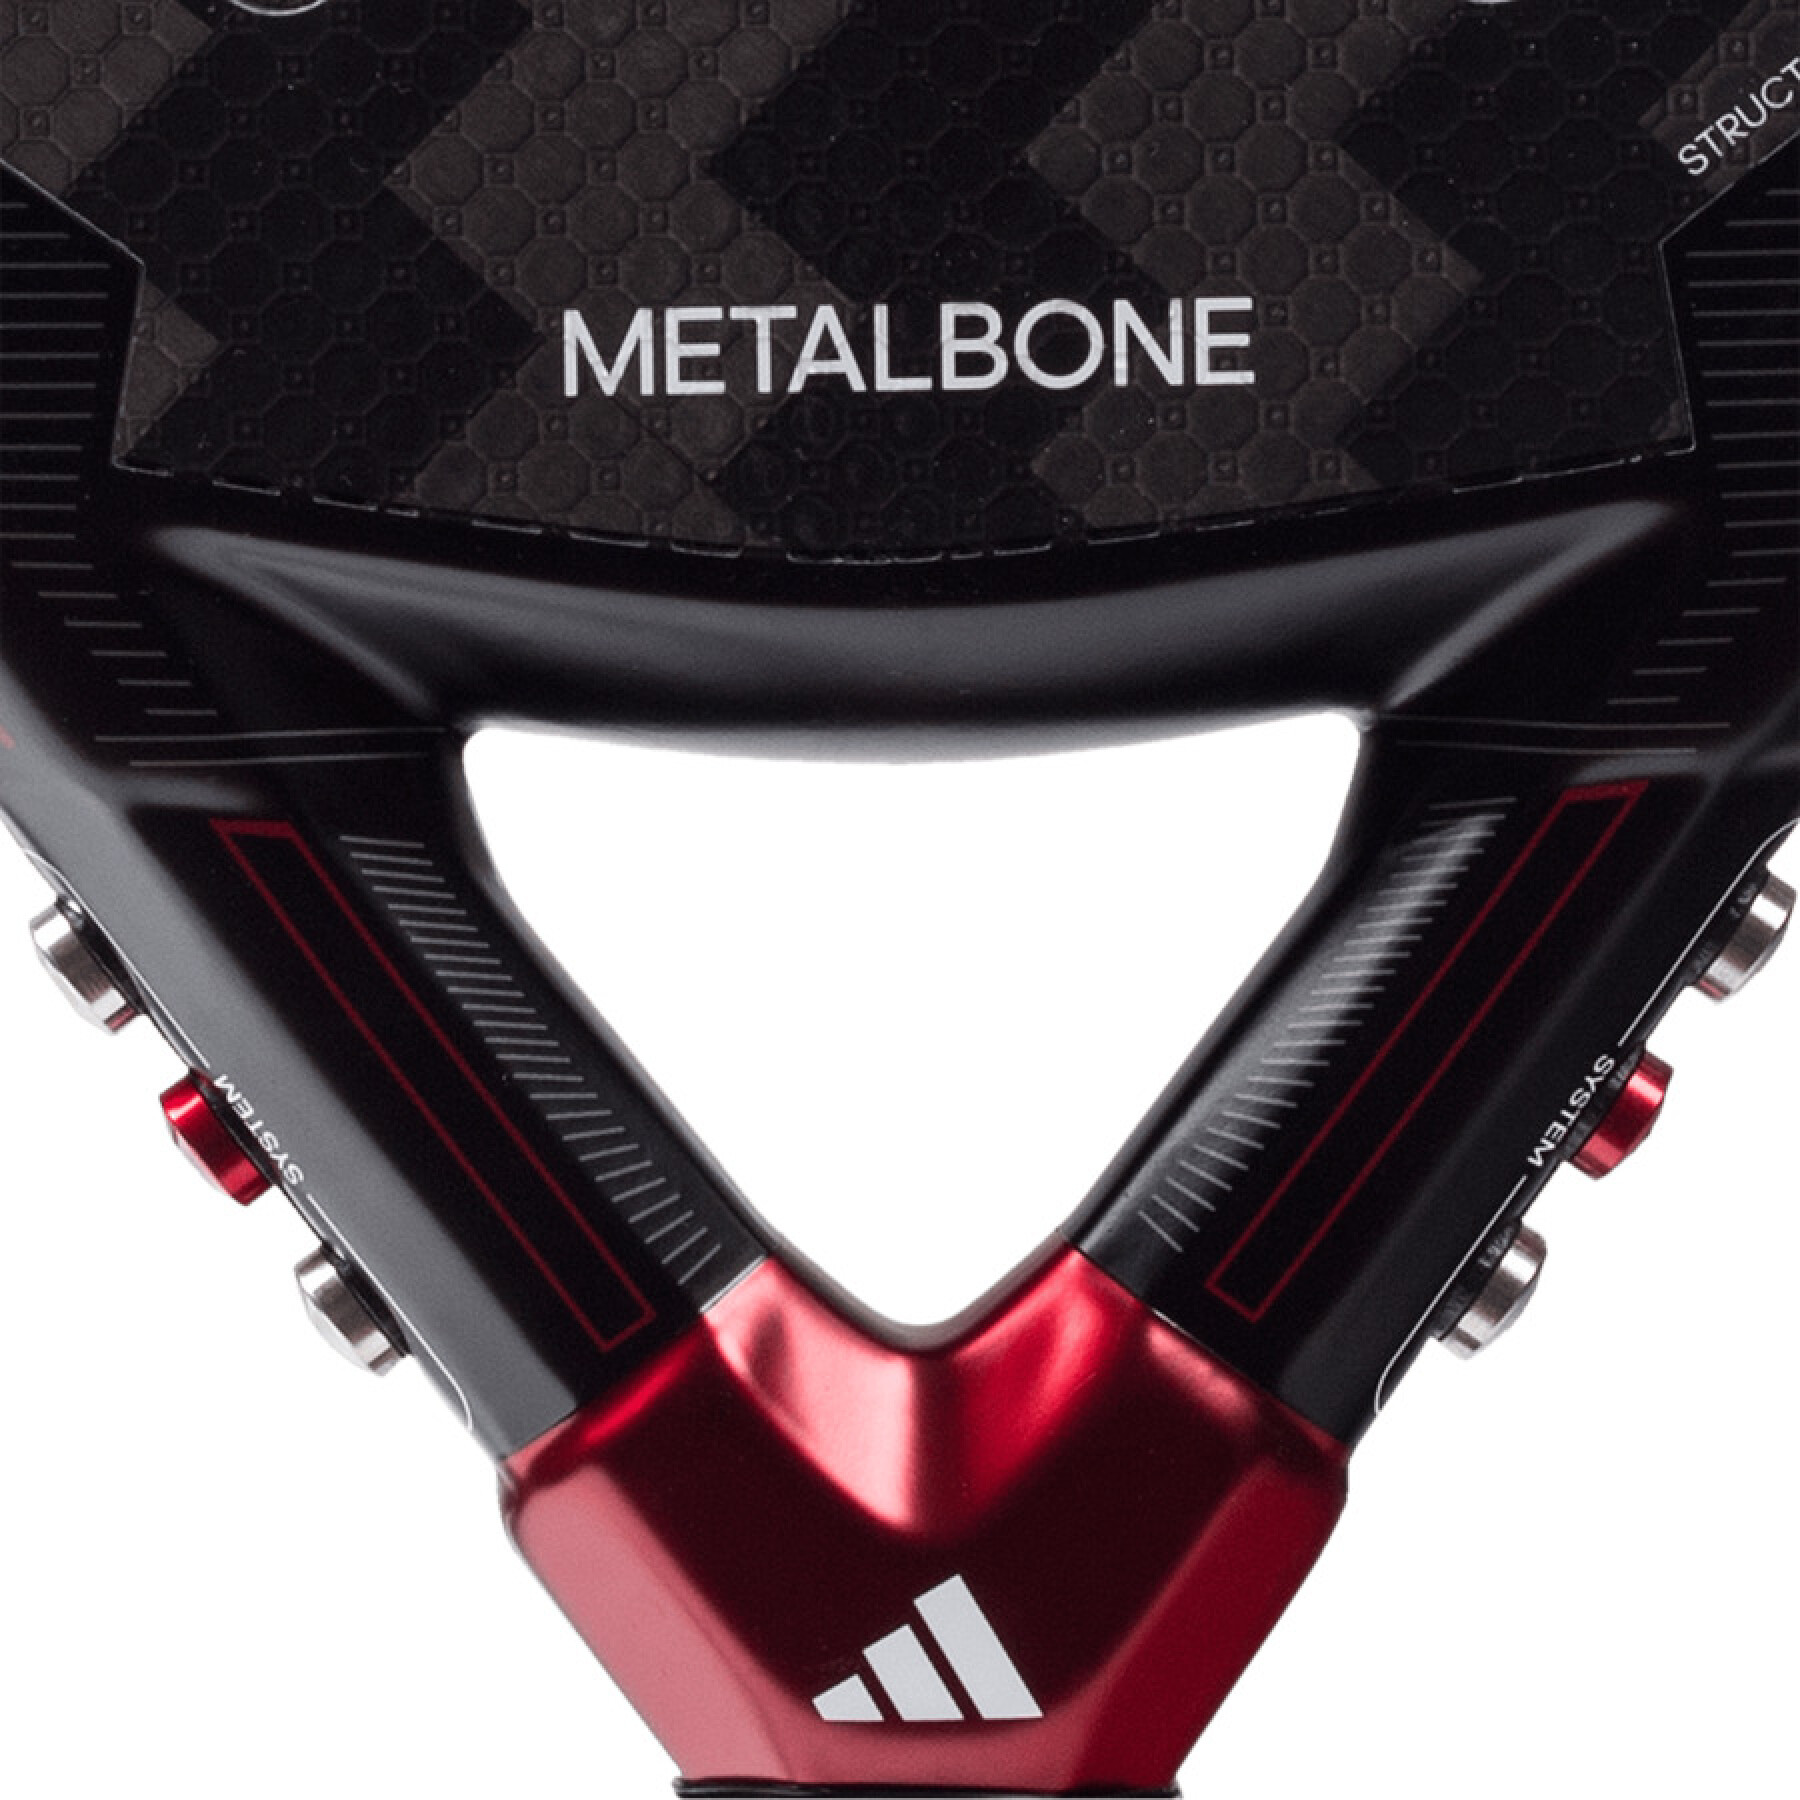 Raqueta de pádel adidas Metalbone 3.3